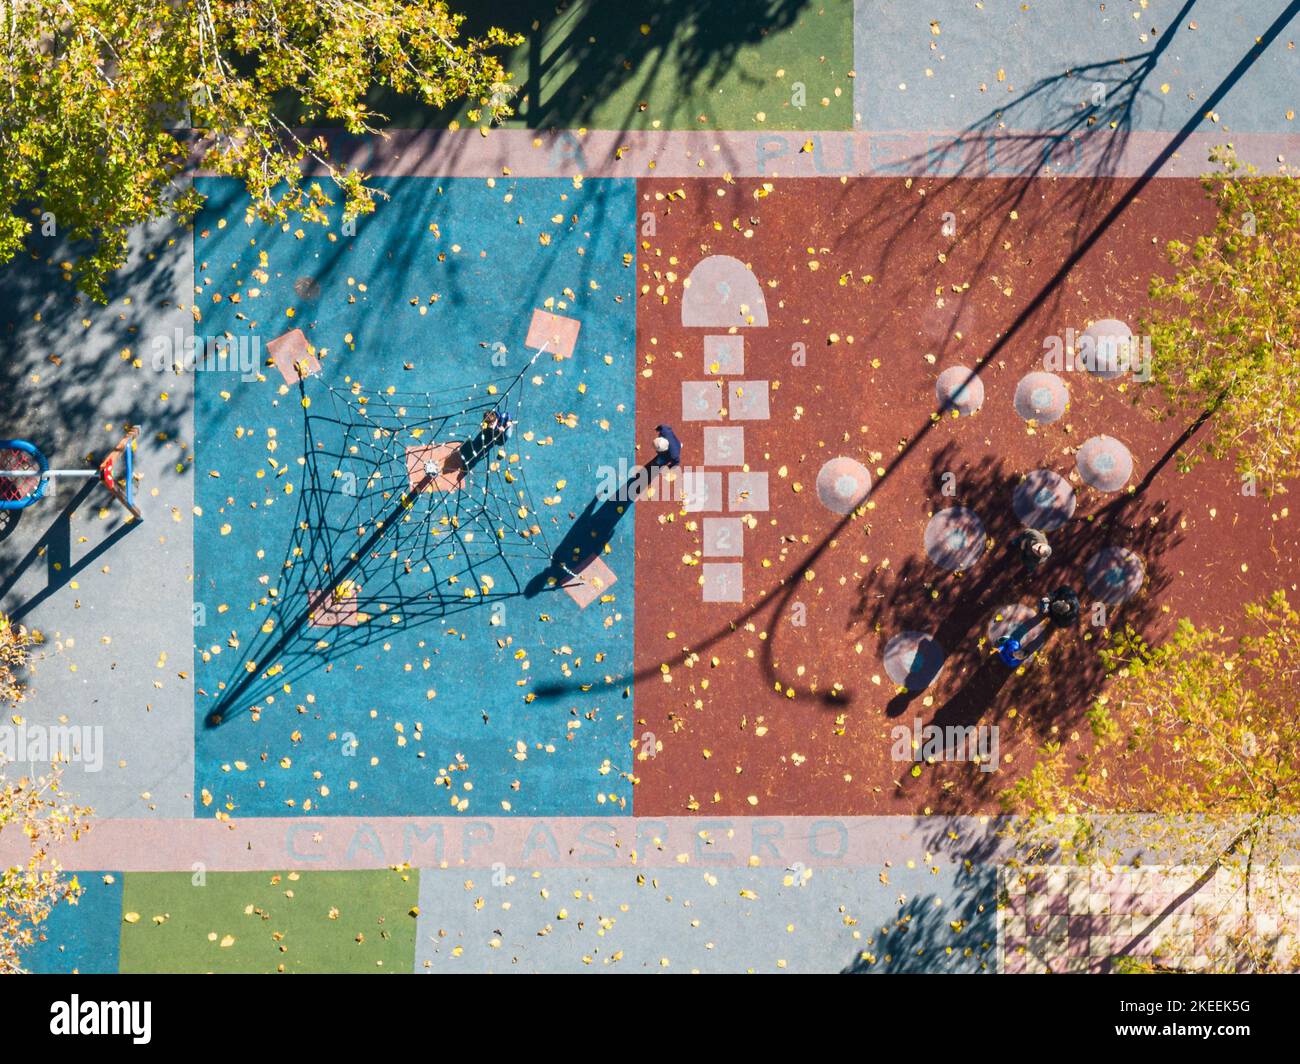 Vista aerea di un colorato parco giochi al crepuscolo, con le ombre delle diverse strutture e inidentificabili adulti e bambini. Foto Stock